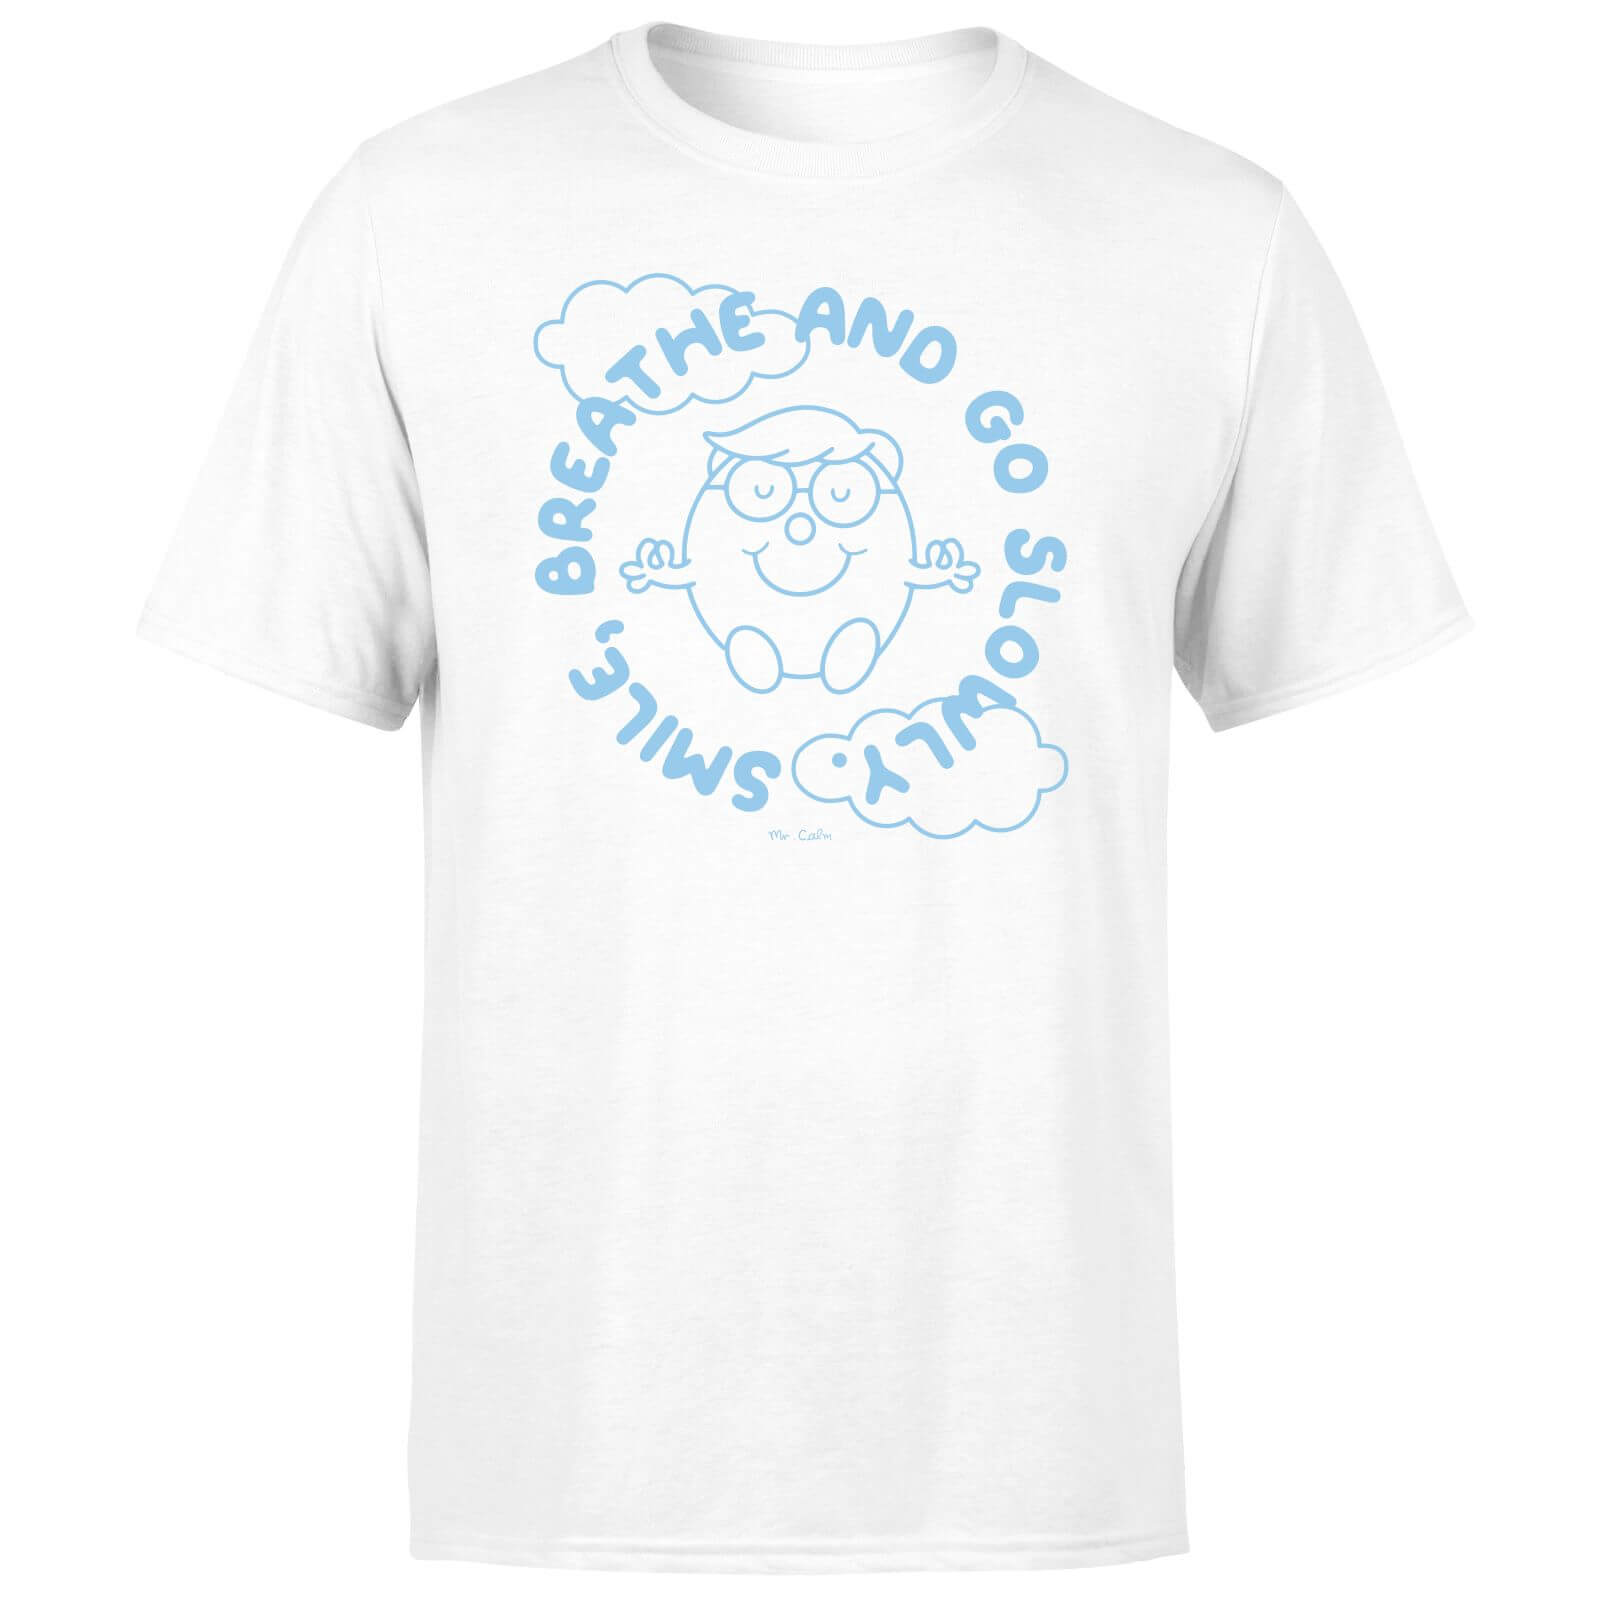 Mr Men & Little Miss Smile, Breathe And Go Slowly Unisex T-shirt - White - XS - White